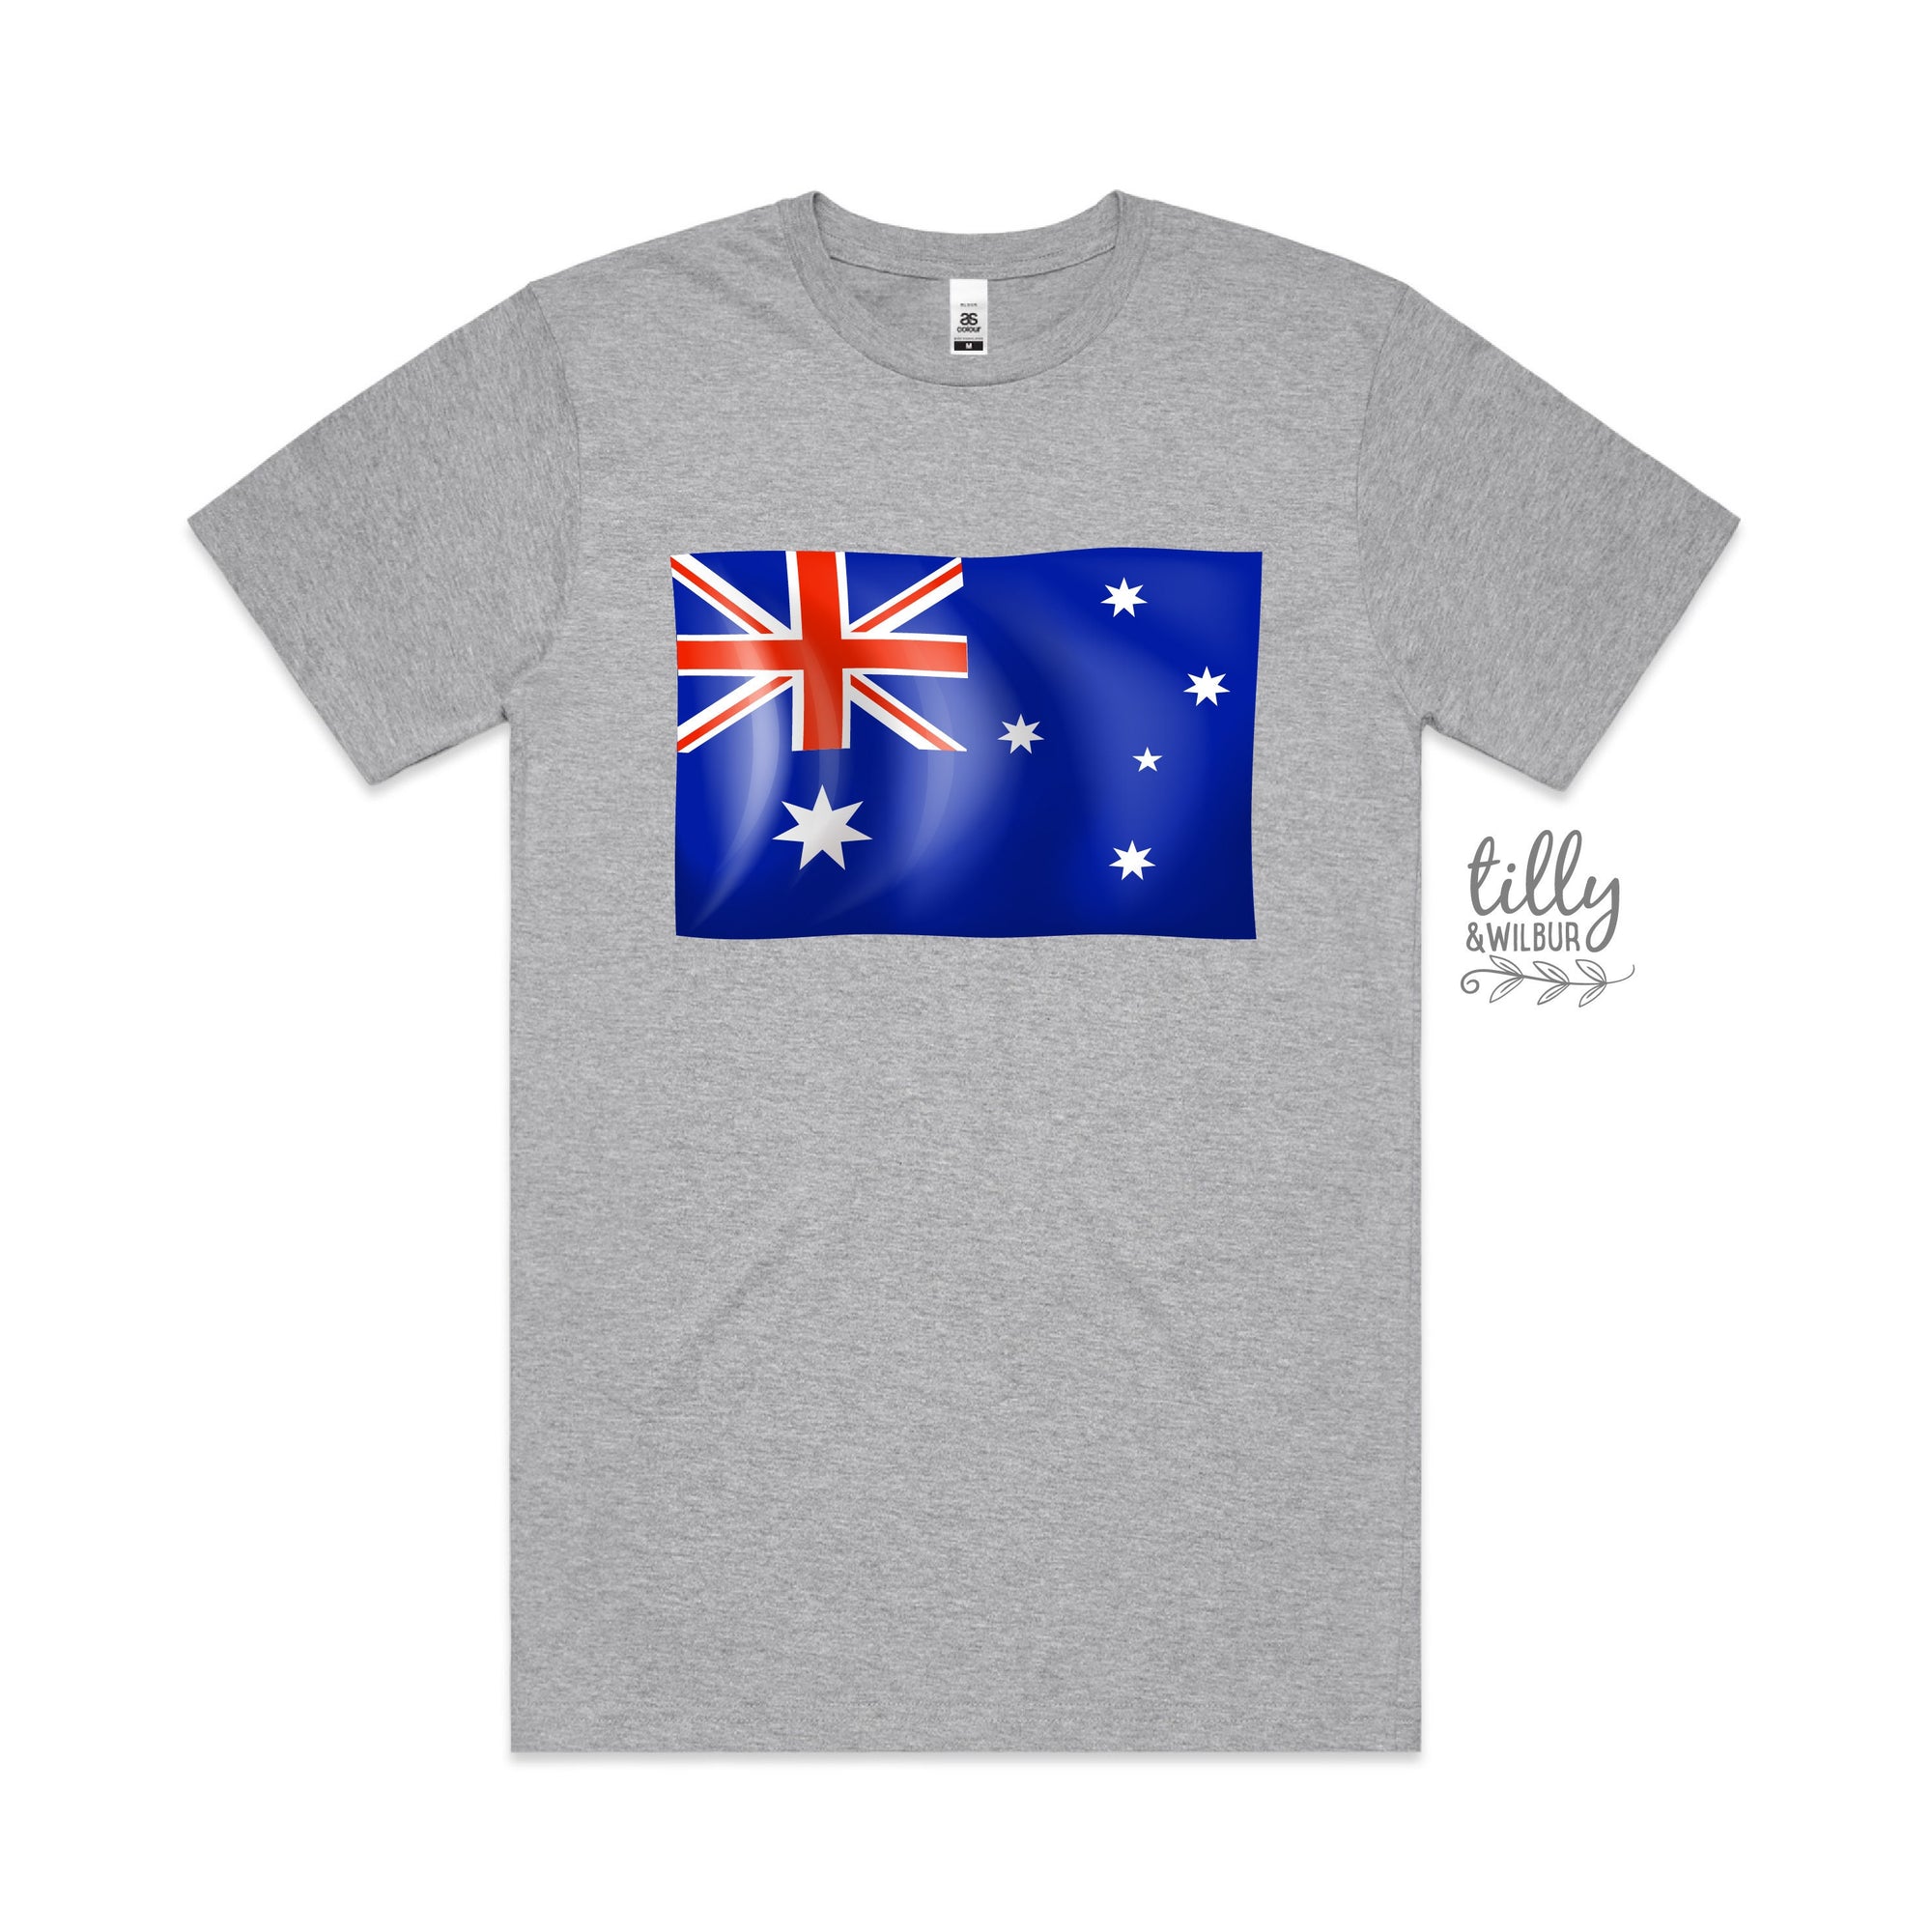 Australia Day Men's T-Shirt, Australia Day T-Shirt, Aussie Aussie Aussie, Australia Day Tee, Men's Australia Day Gift, Australian Flag Shirt